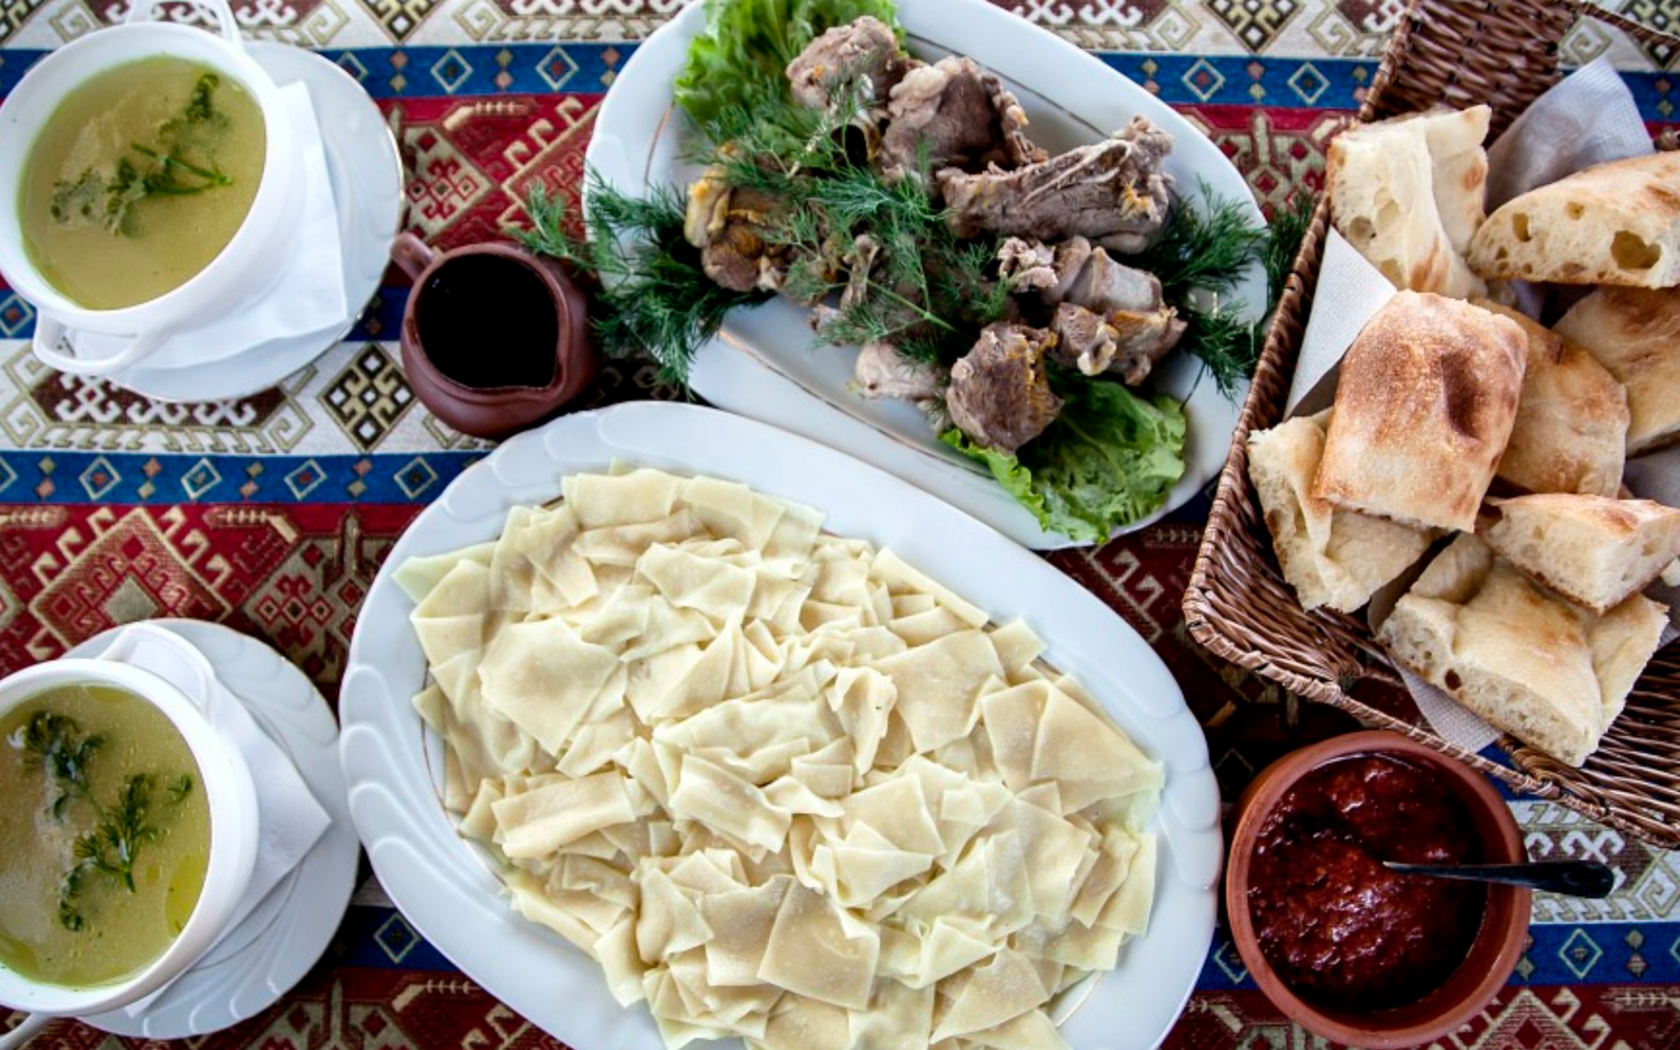 Кумыкский хинкал лезгинский хинкал. Хинкал Дагестанский Лакский. Национальная кухня Дагестана хинкал. Дагестанское блюдо хинкал. Национальная еда хинкал Дагестанская.